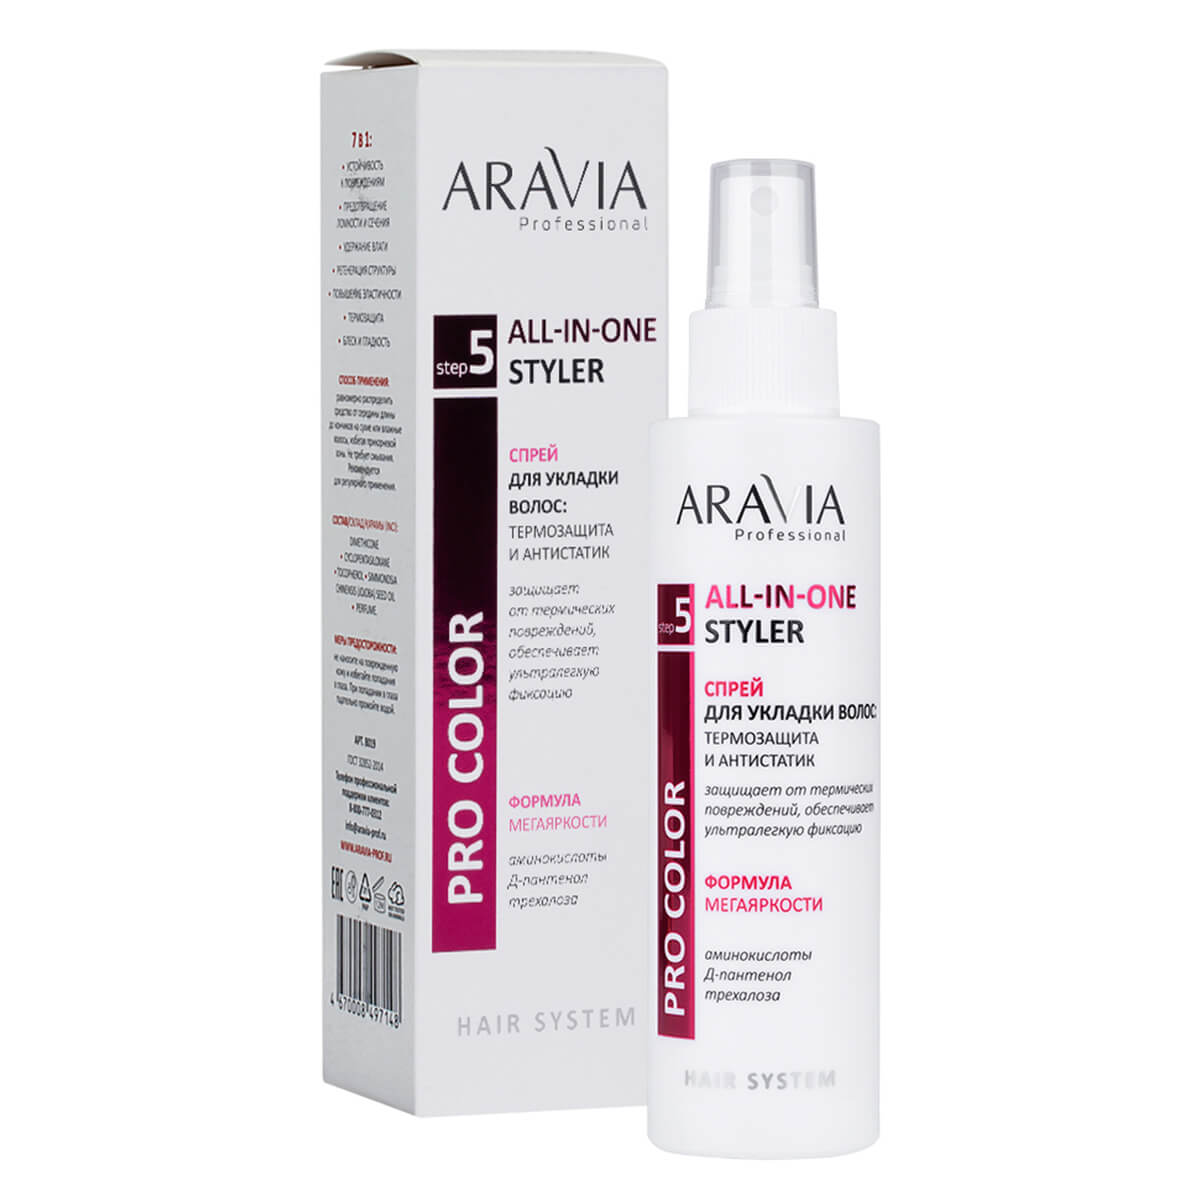 Спрей для укладки волос: термозащита и антистатик, 150 мл, Aravia - фото 1